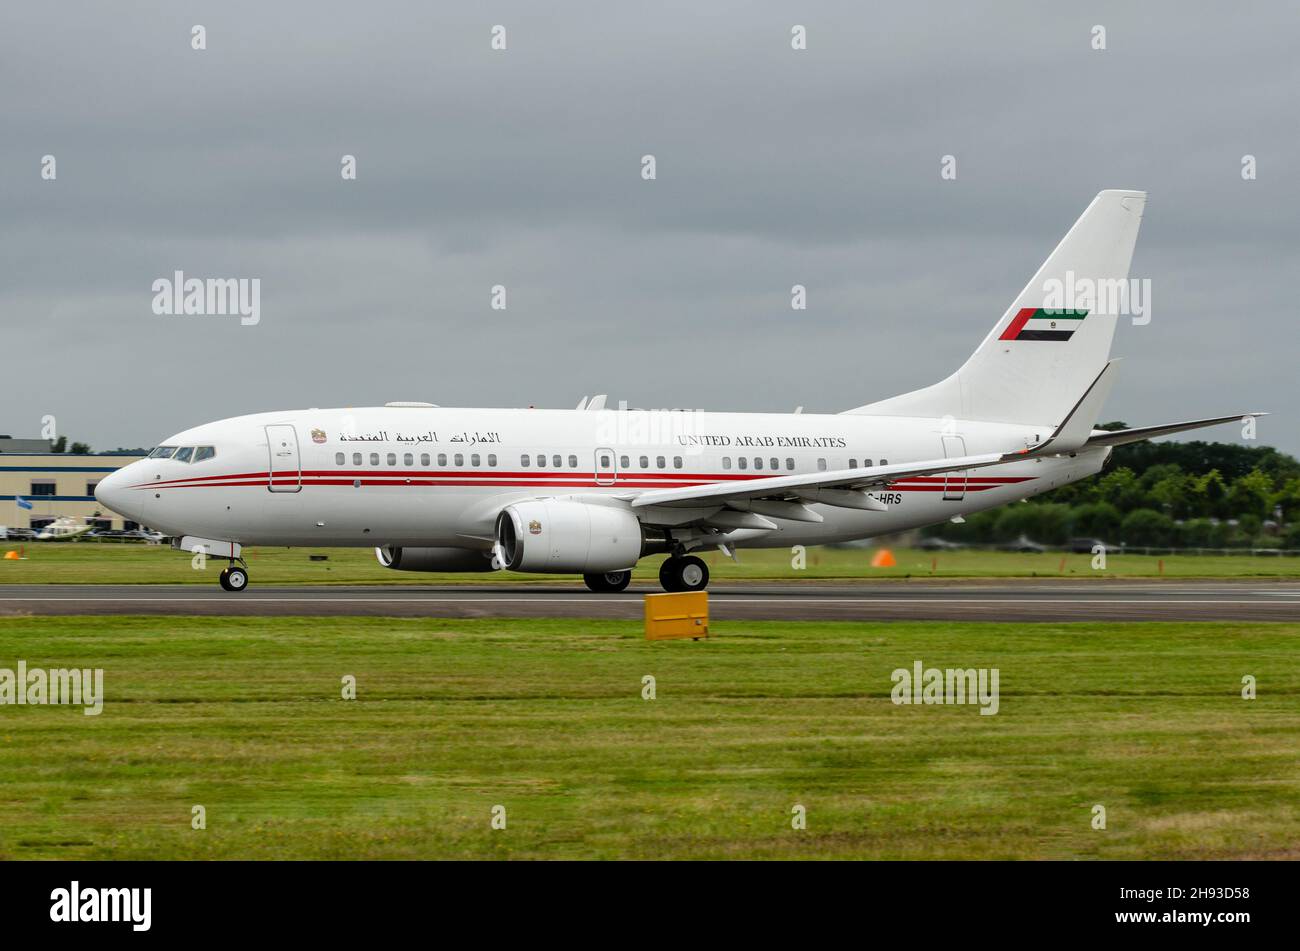 Regierung der Vereinigten Arabischen Emirate Boeing 737-7EO BBJ, Boeing 737-700 BBJ, Passagierflugzeug A6-HRS, am Flughafen Farnborough, Großbritannien. VAE VIP-Transport Stockfoto